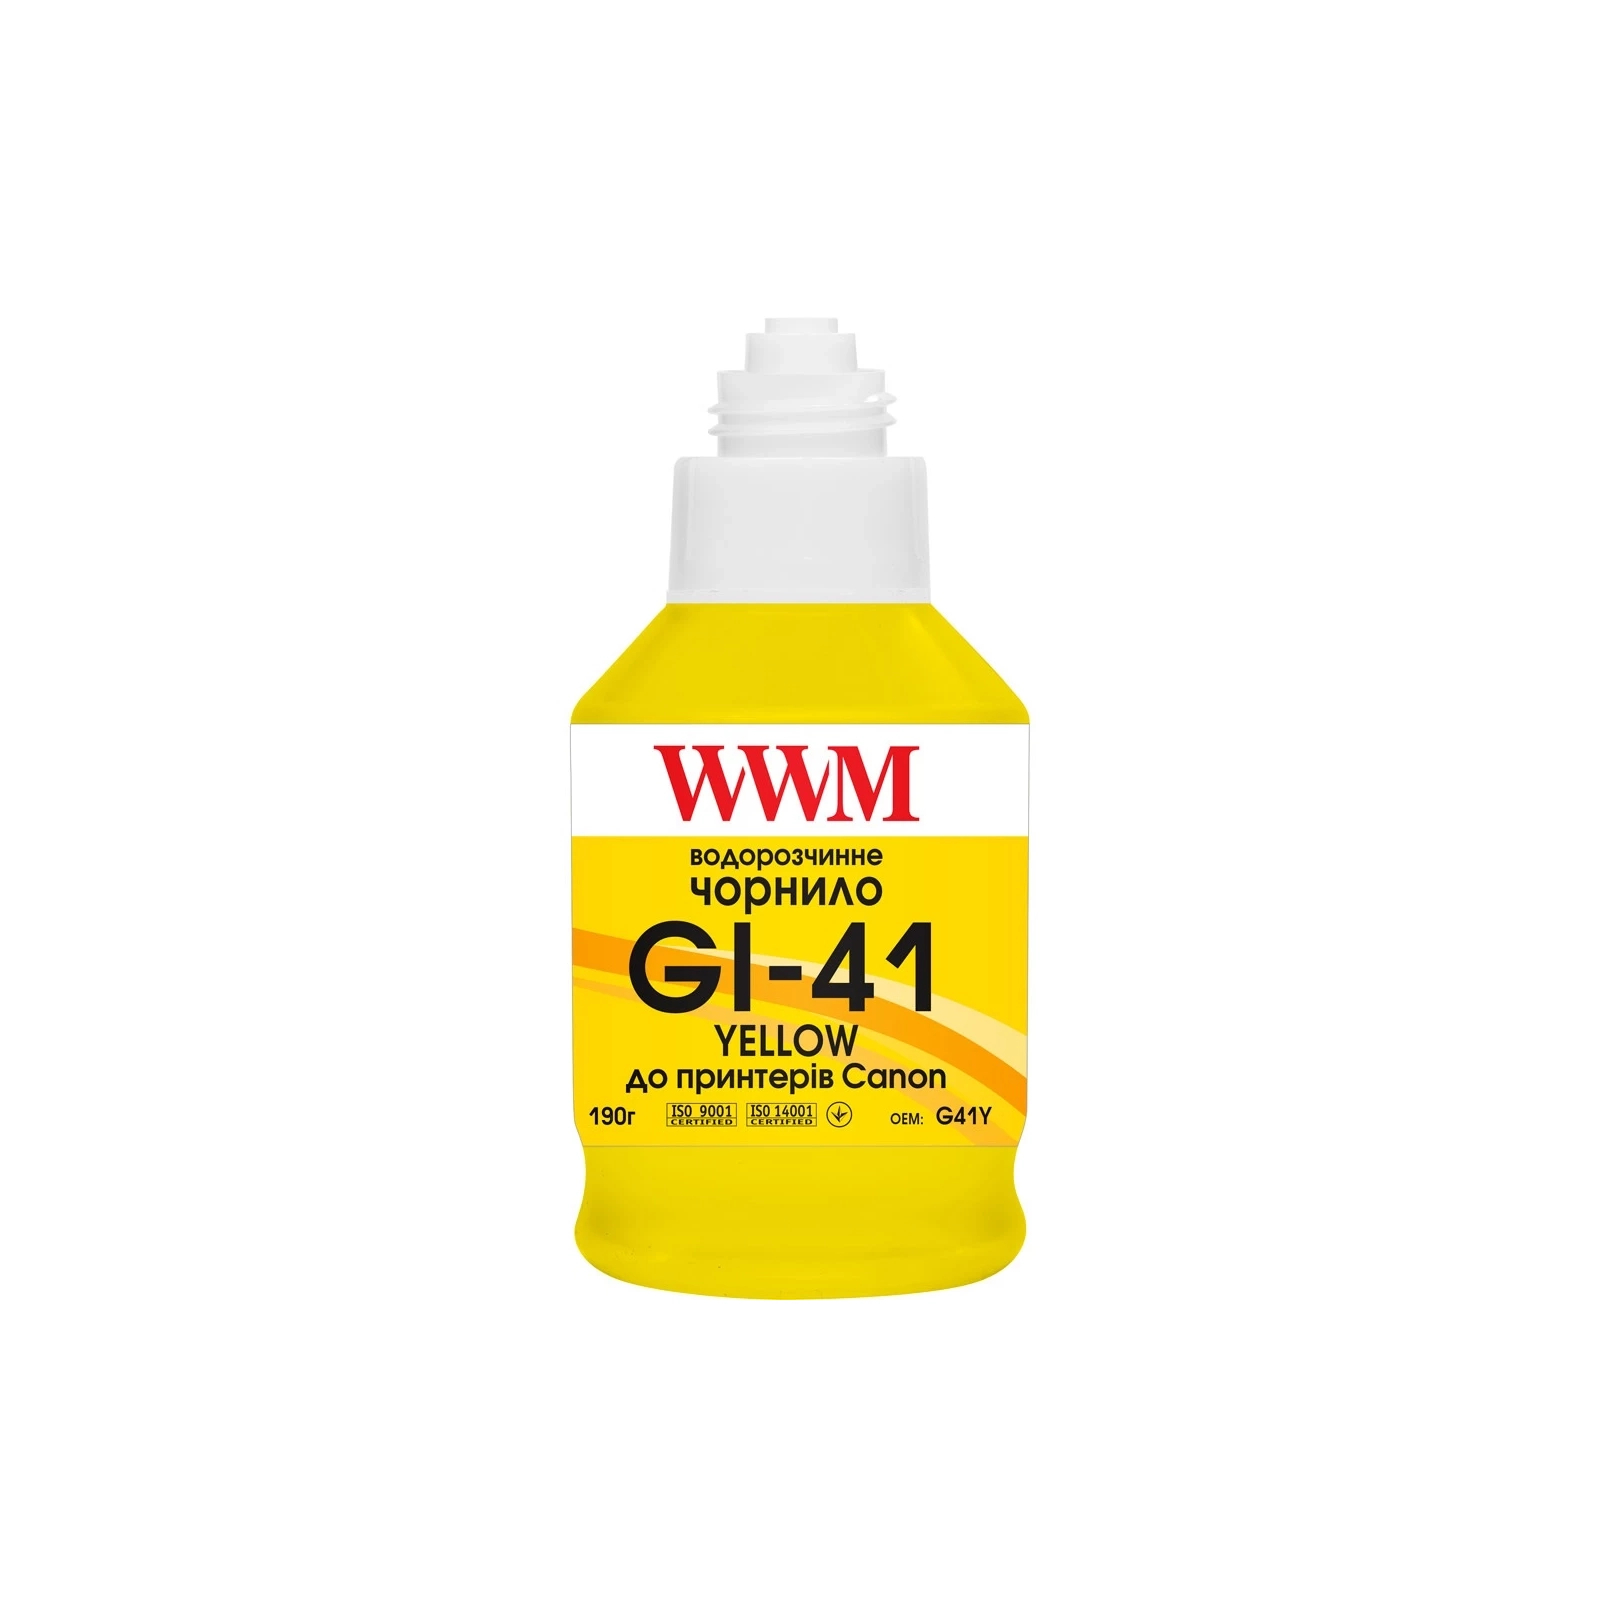 Чернила WWM Canon GI-41 для G2420/3420 4х190г BP/C/M/Y SET, Pigm/Water (G41SET4) изображение 2